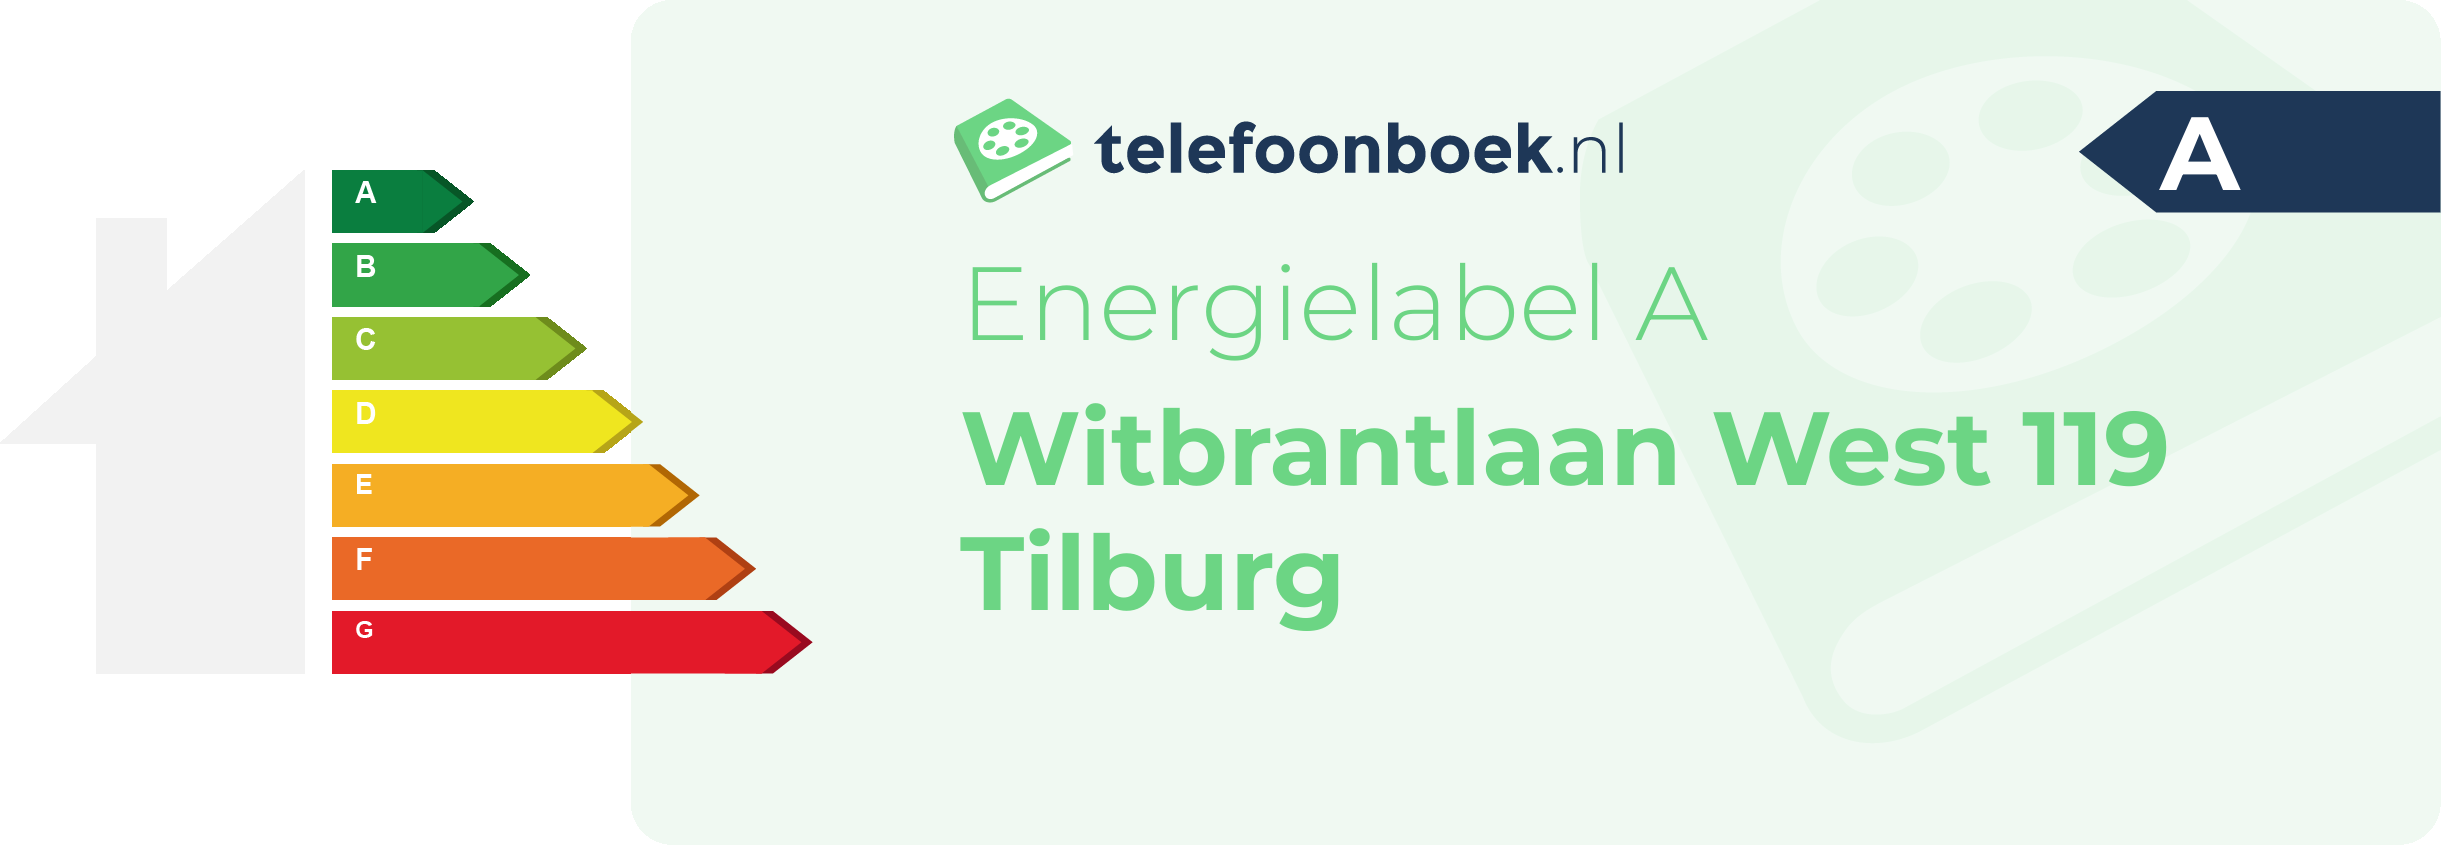 Energielabel Witbrantlaan West 119 Tilburg